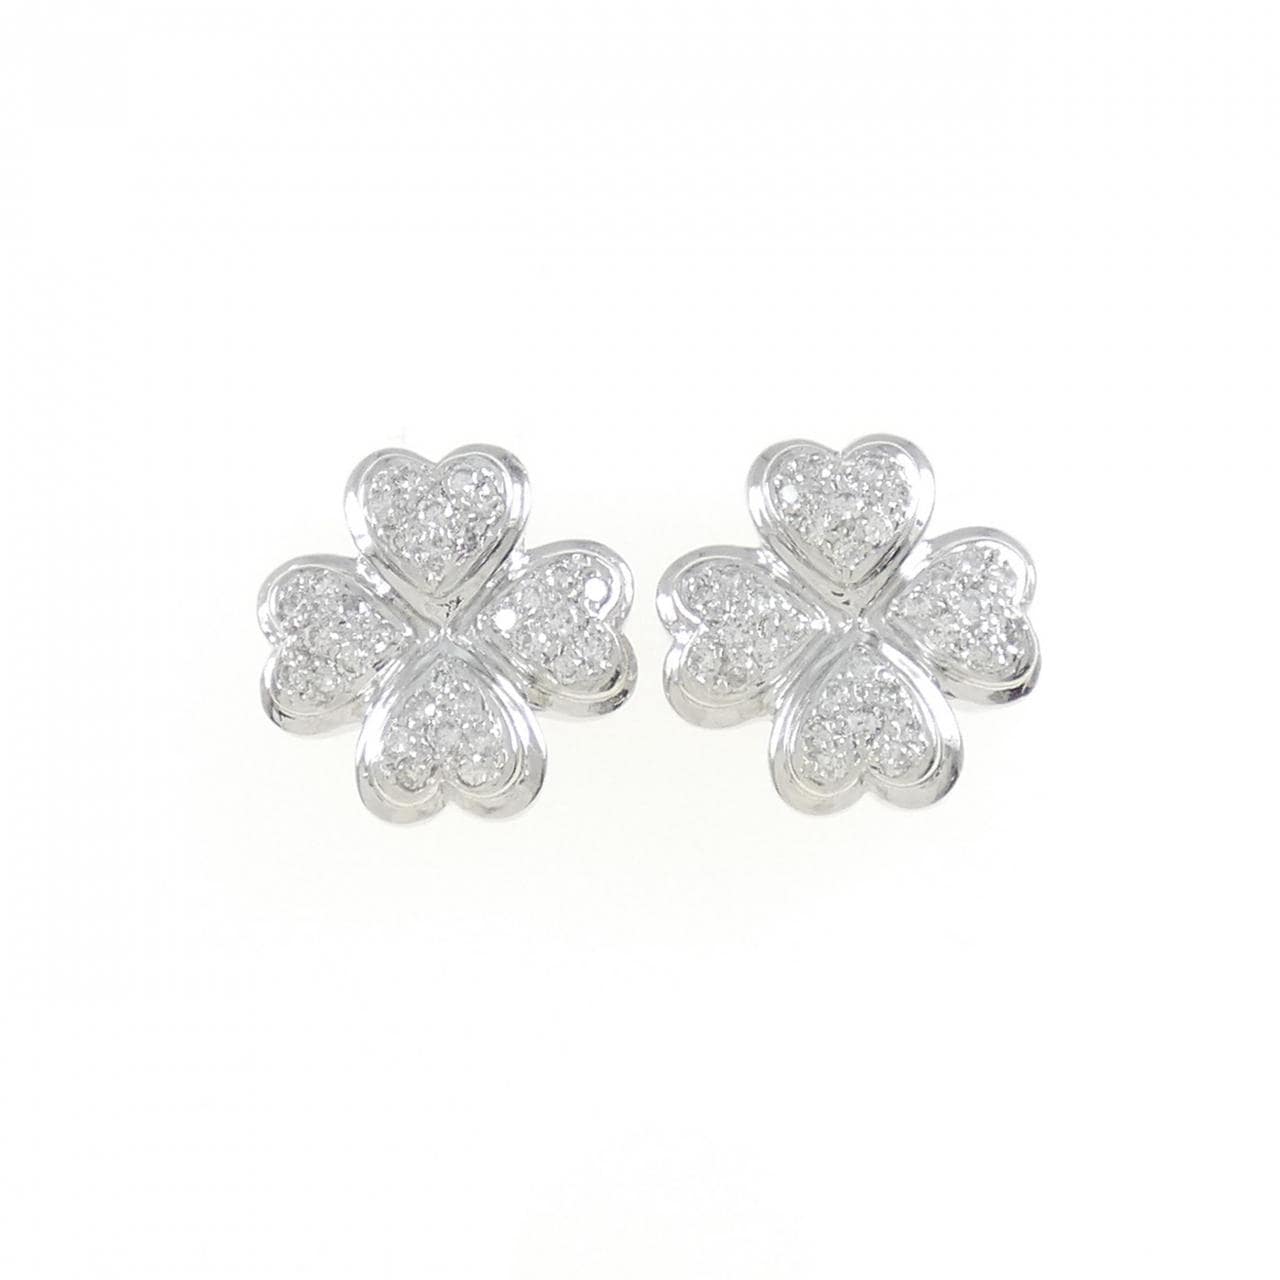 PT/K14WG Clover Diamond Earrings 0.50CT